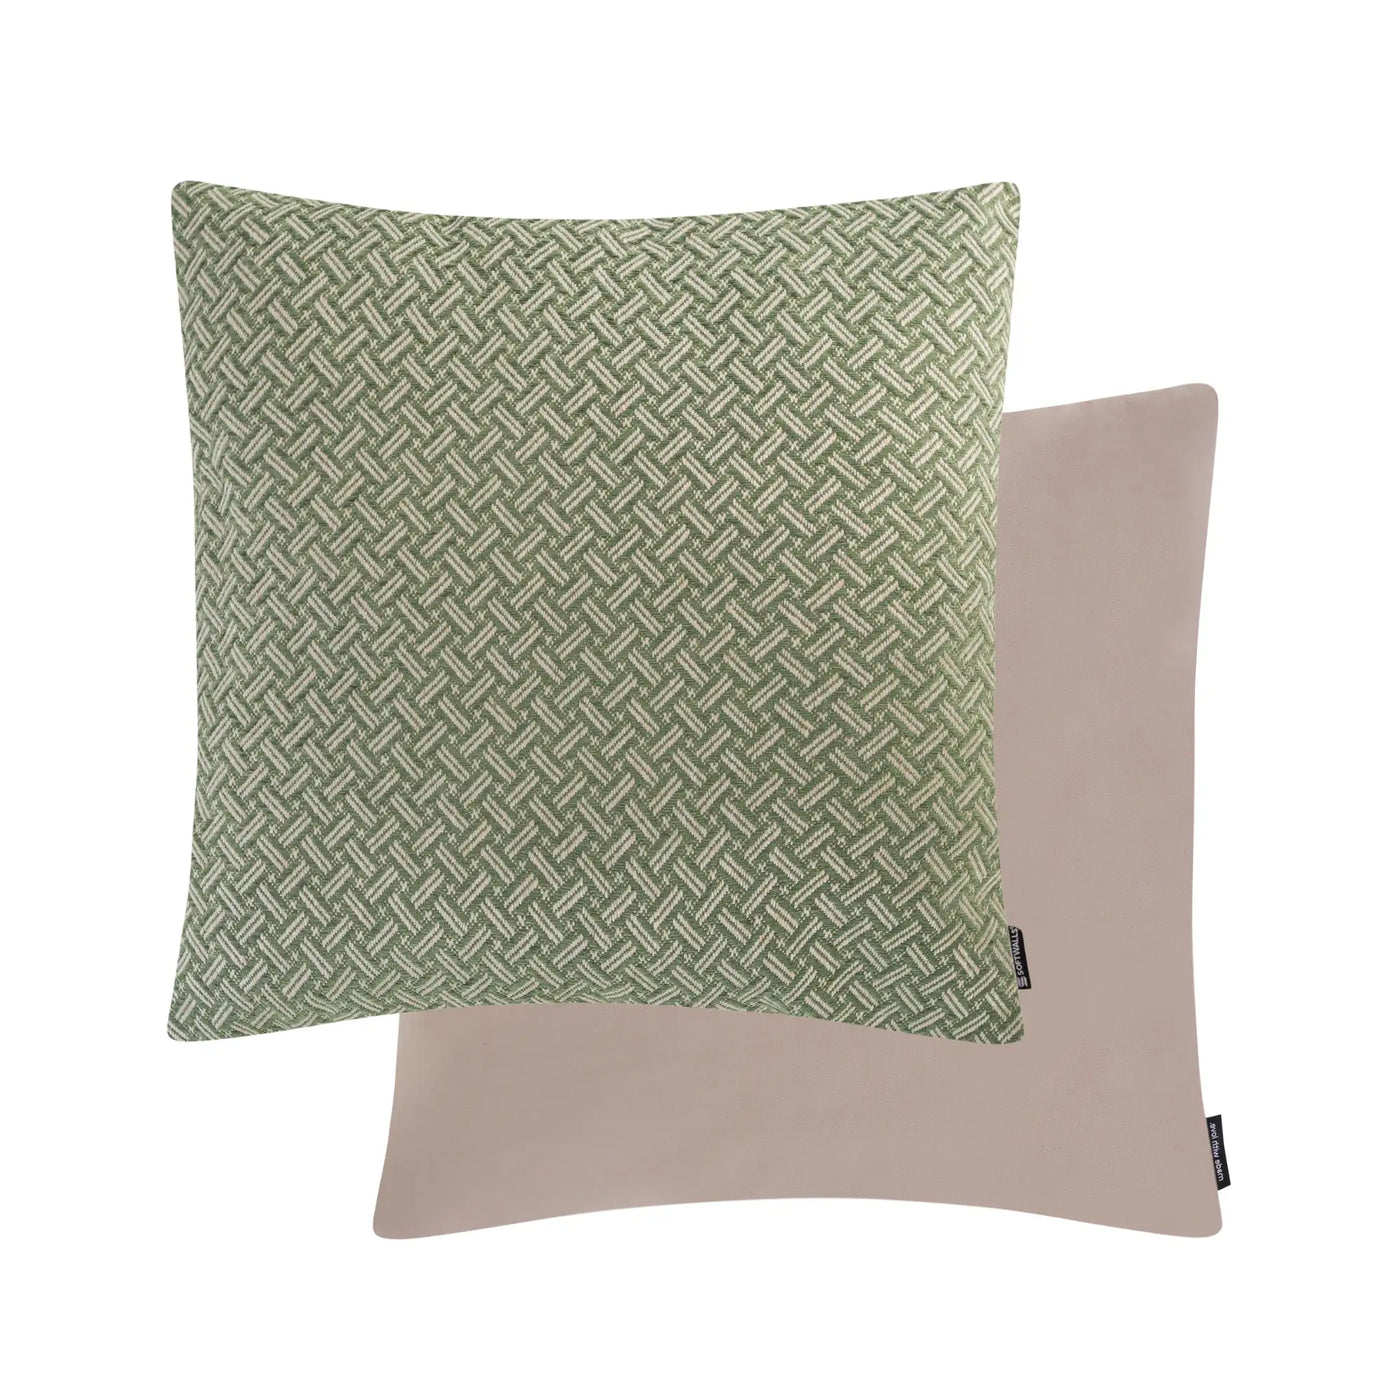 Kissenhülle gemustert Webstoff Wendekissen Samt in der Größe 50 x 50 cm und der Farbe Grün Mint.